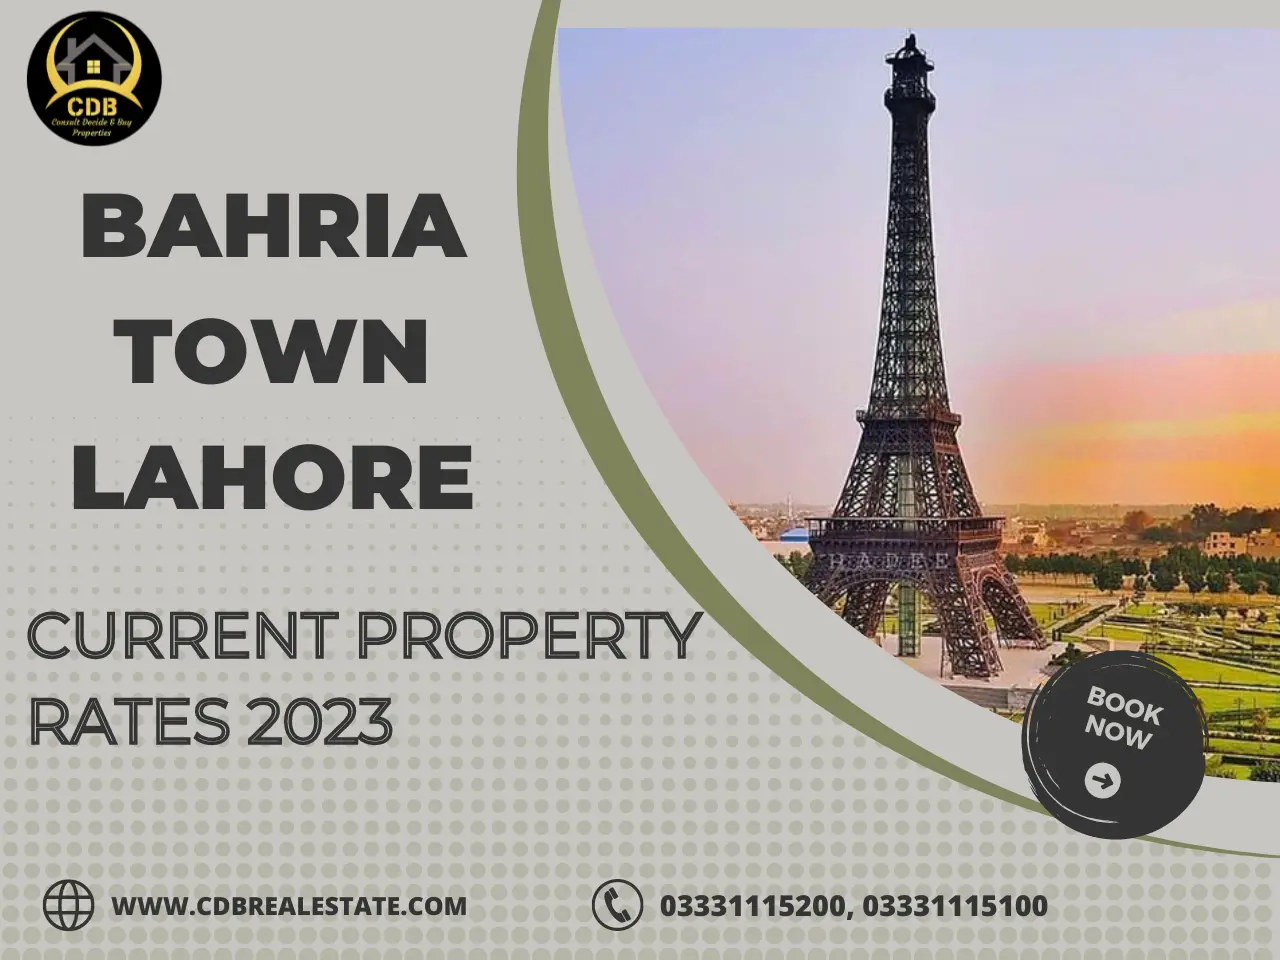 Bahria Town Lahore Property Rates Analysis 2023